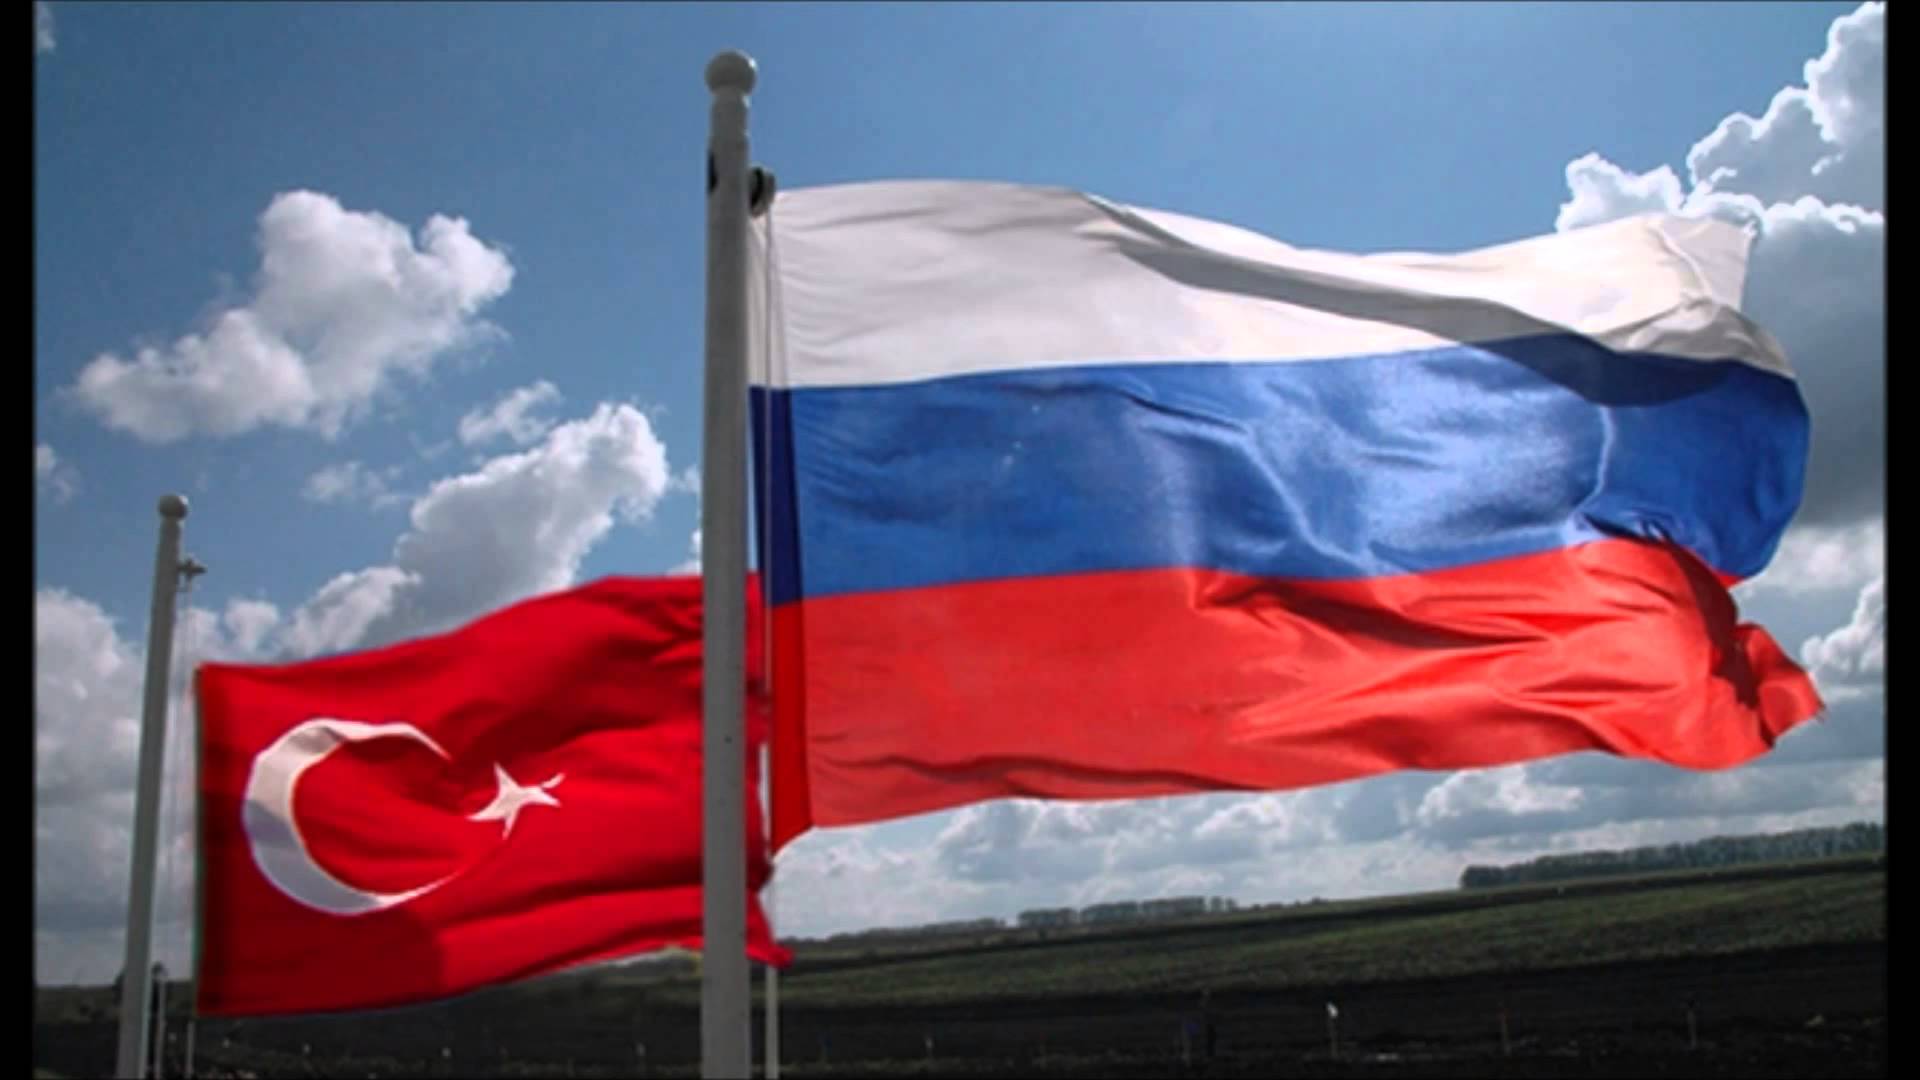 ՌԴ-ն ու Թուրքիան ցանկանում են երկկողմ ապրանքաշրջանառությունը հասցնել 100 միլիարդ դոլարի